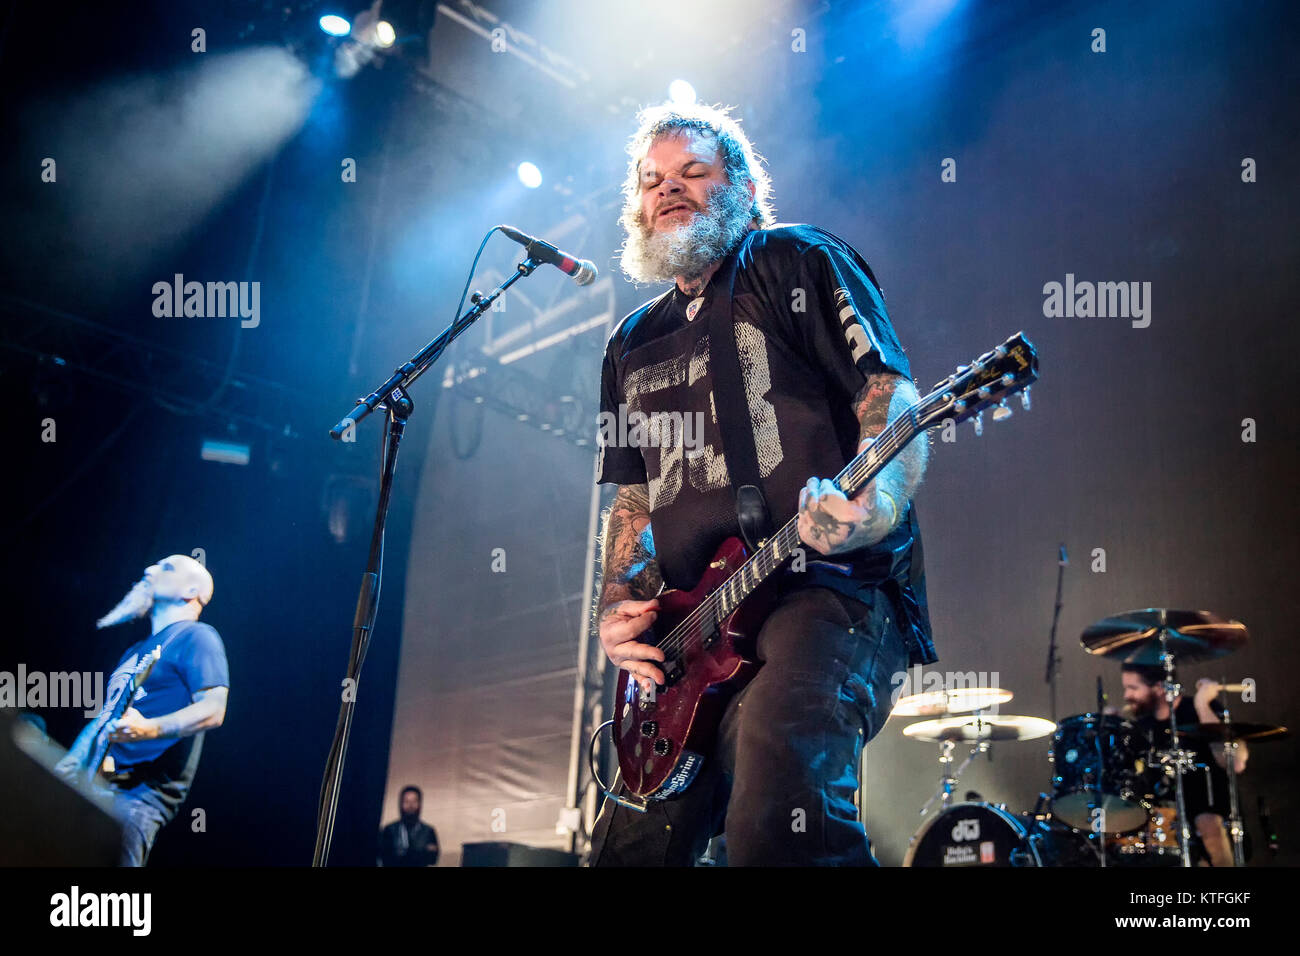 Die amerikanische nu-metal band Neurose führt ein Live Konzert in der norwegischen Musik Festival Øyafestivalen 2016 in Oslo. Hier Sänger und Gitarrist Scott Kelly ist sene live auf der Bühne. Norwegen, 13/08 2016. Stockfoto